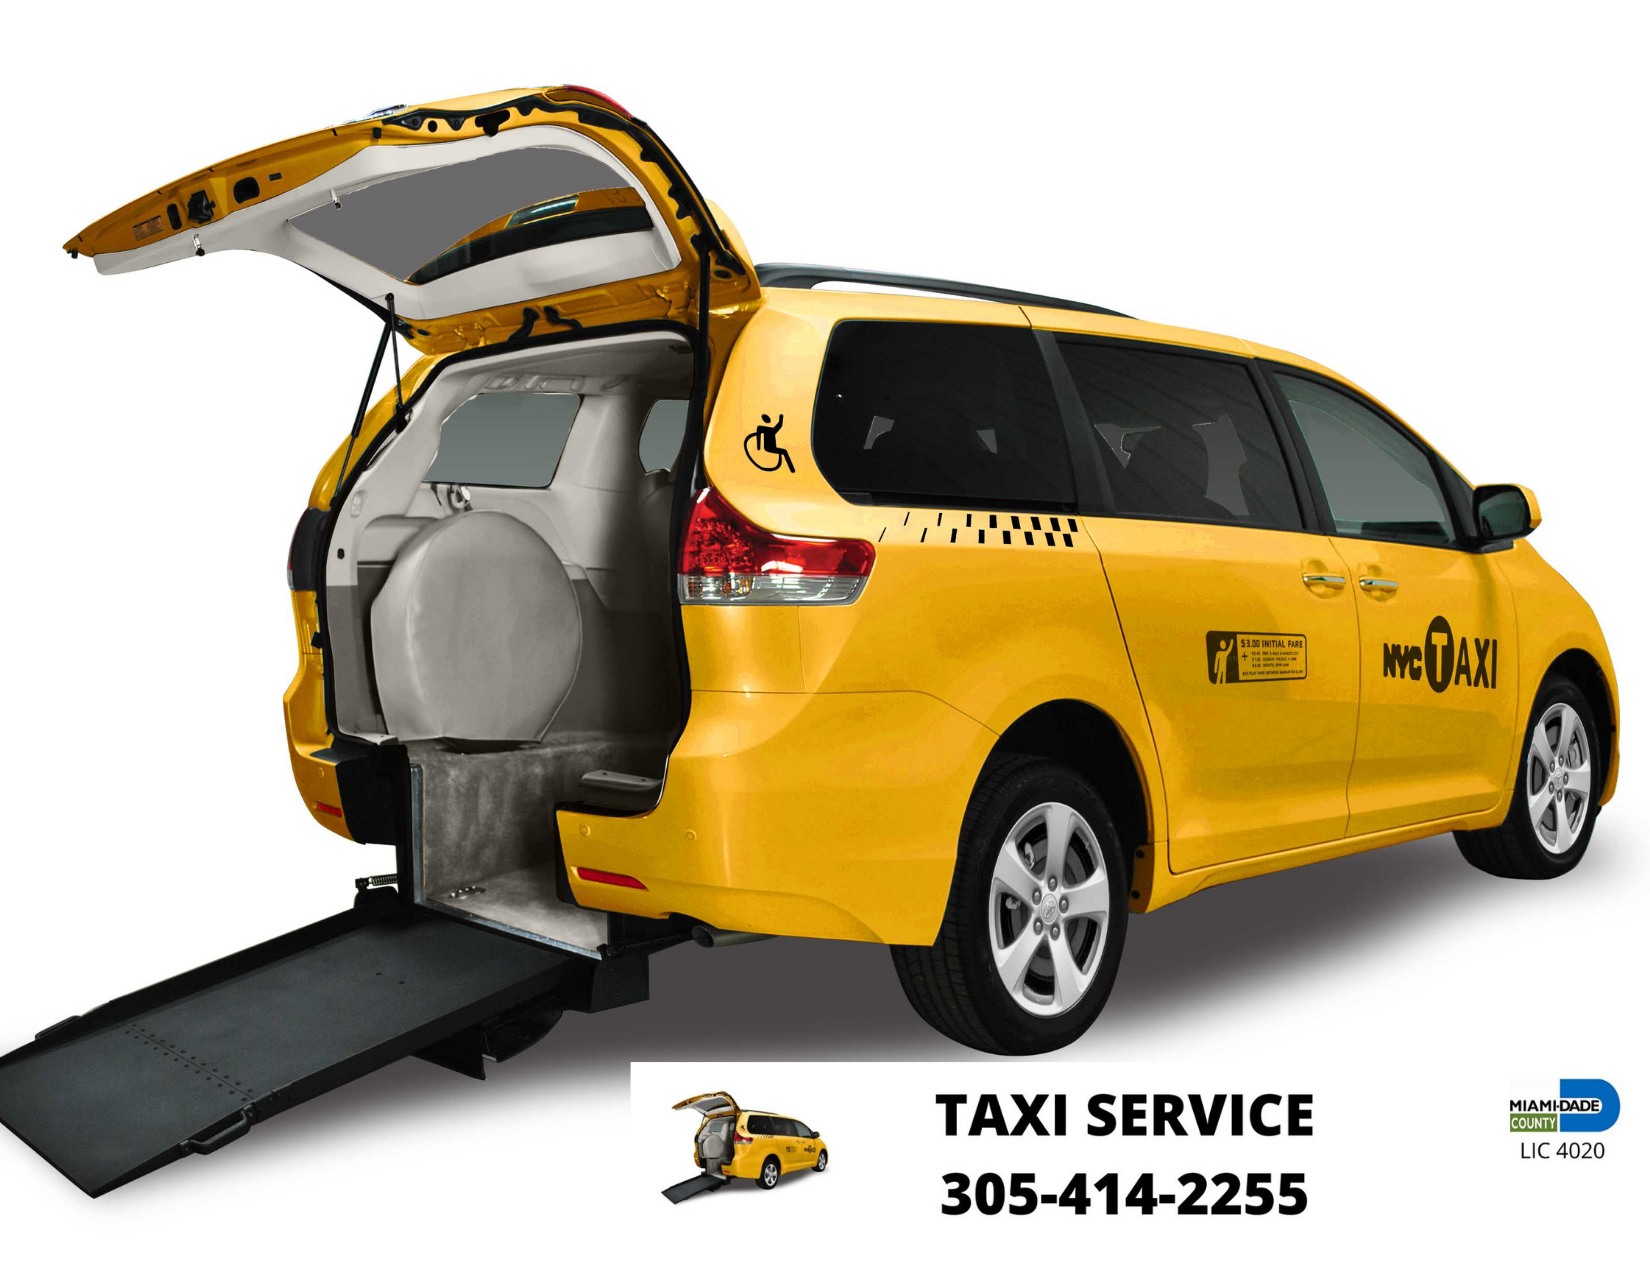 Taxi Service Miami     Special Handicap Service Lic 4020